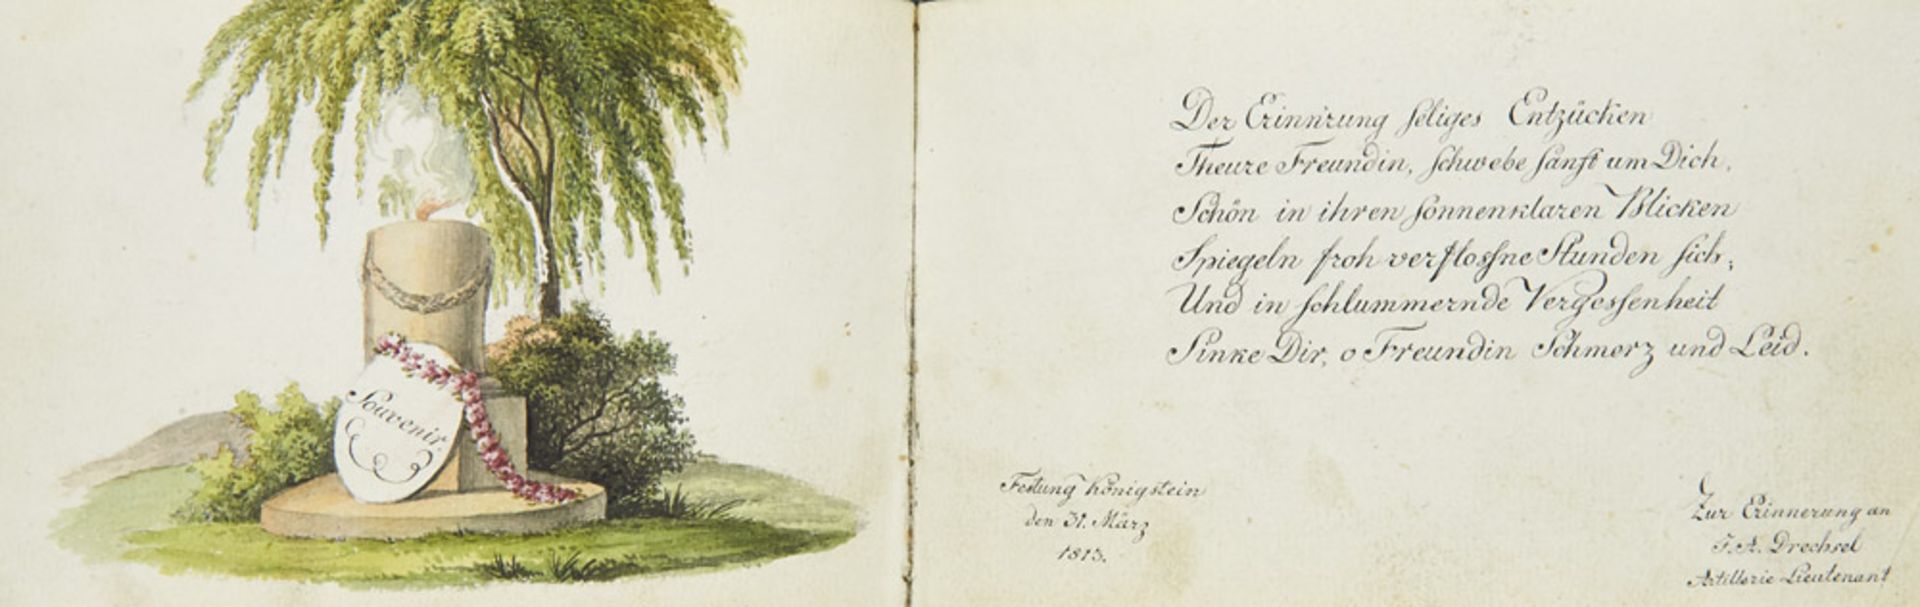 Liber amicorum - Sachsen - - Stammbuch mit ca. 47 Einträgen, 4 Aquarellen bzw. aquarelli